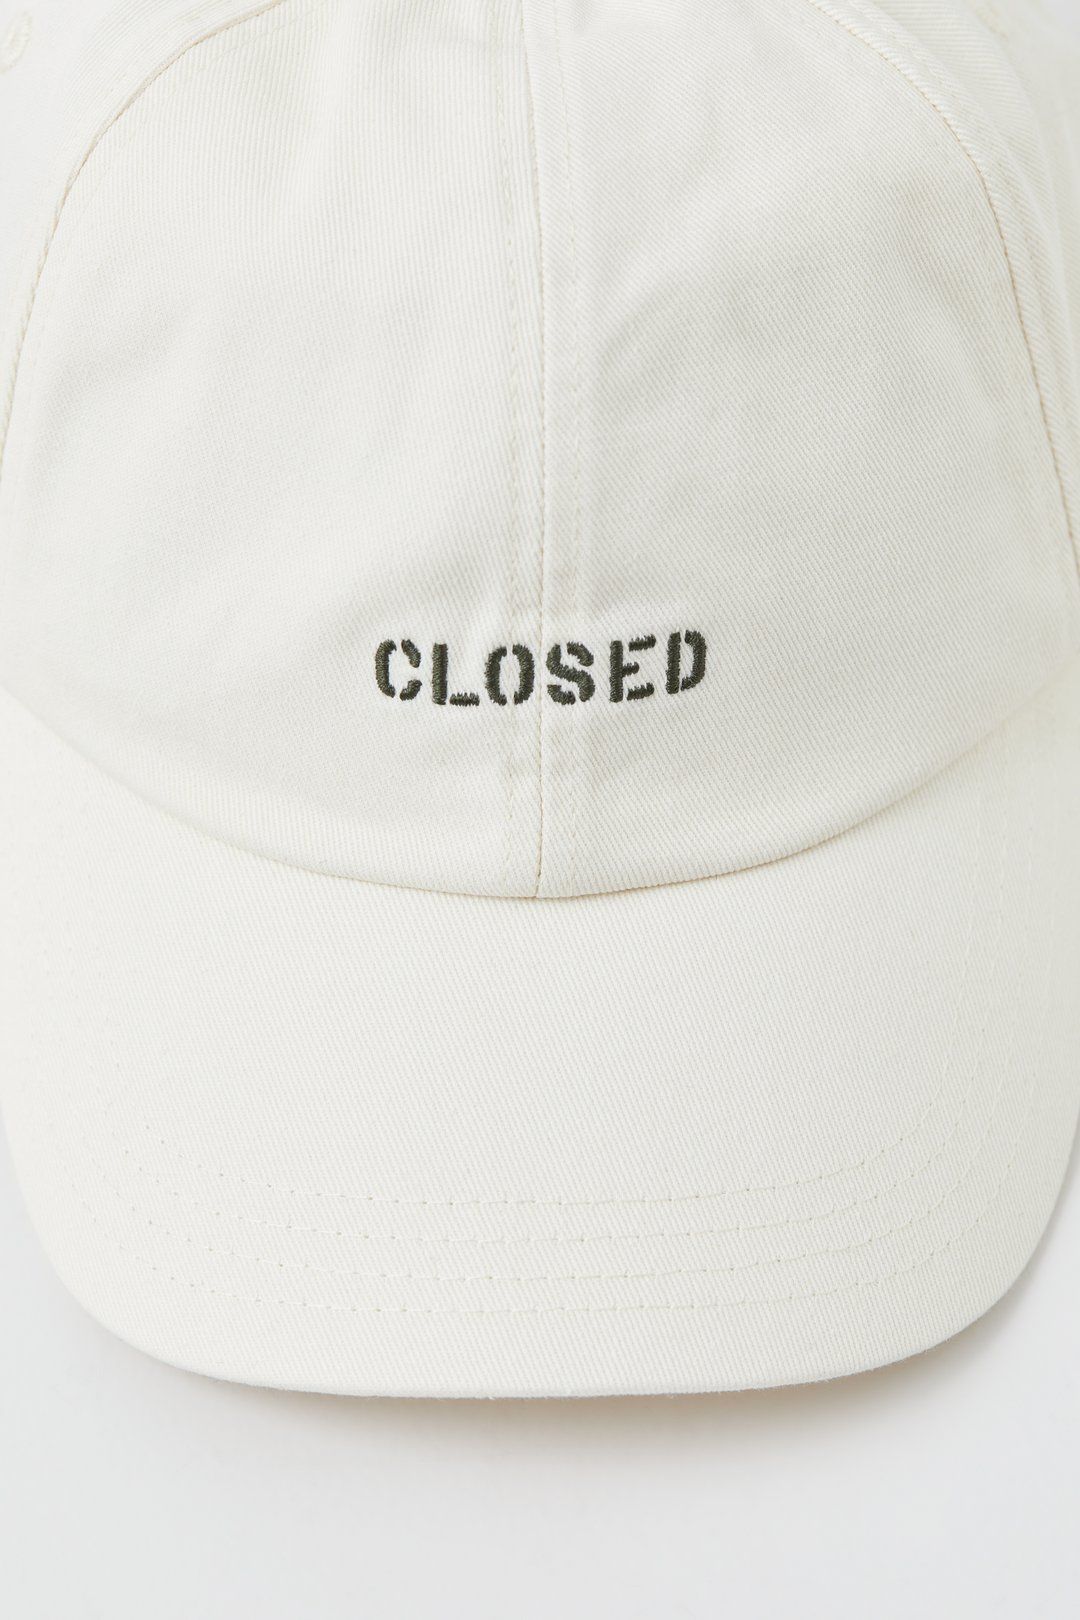 Closed Cap | Closed